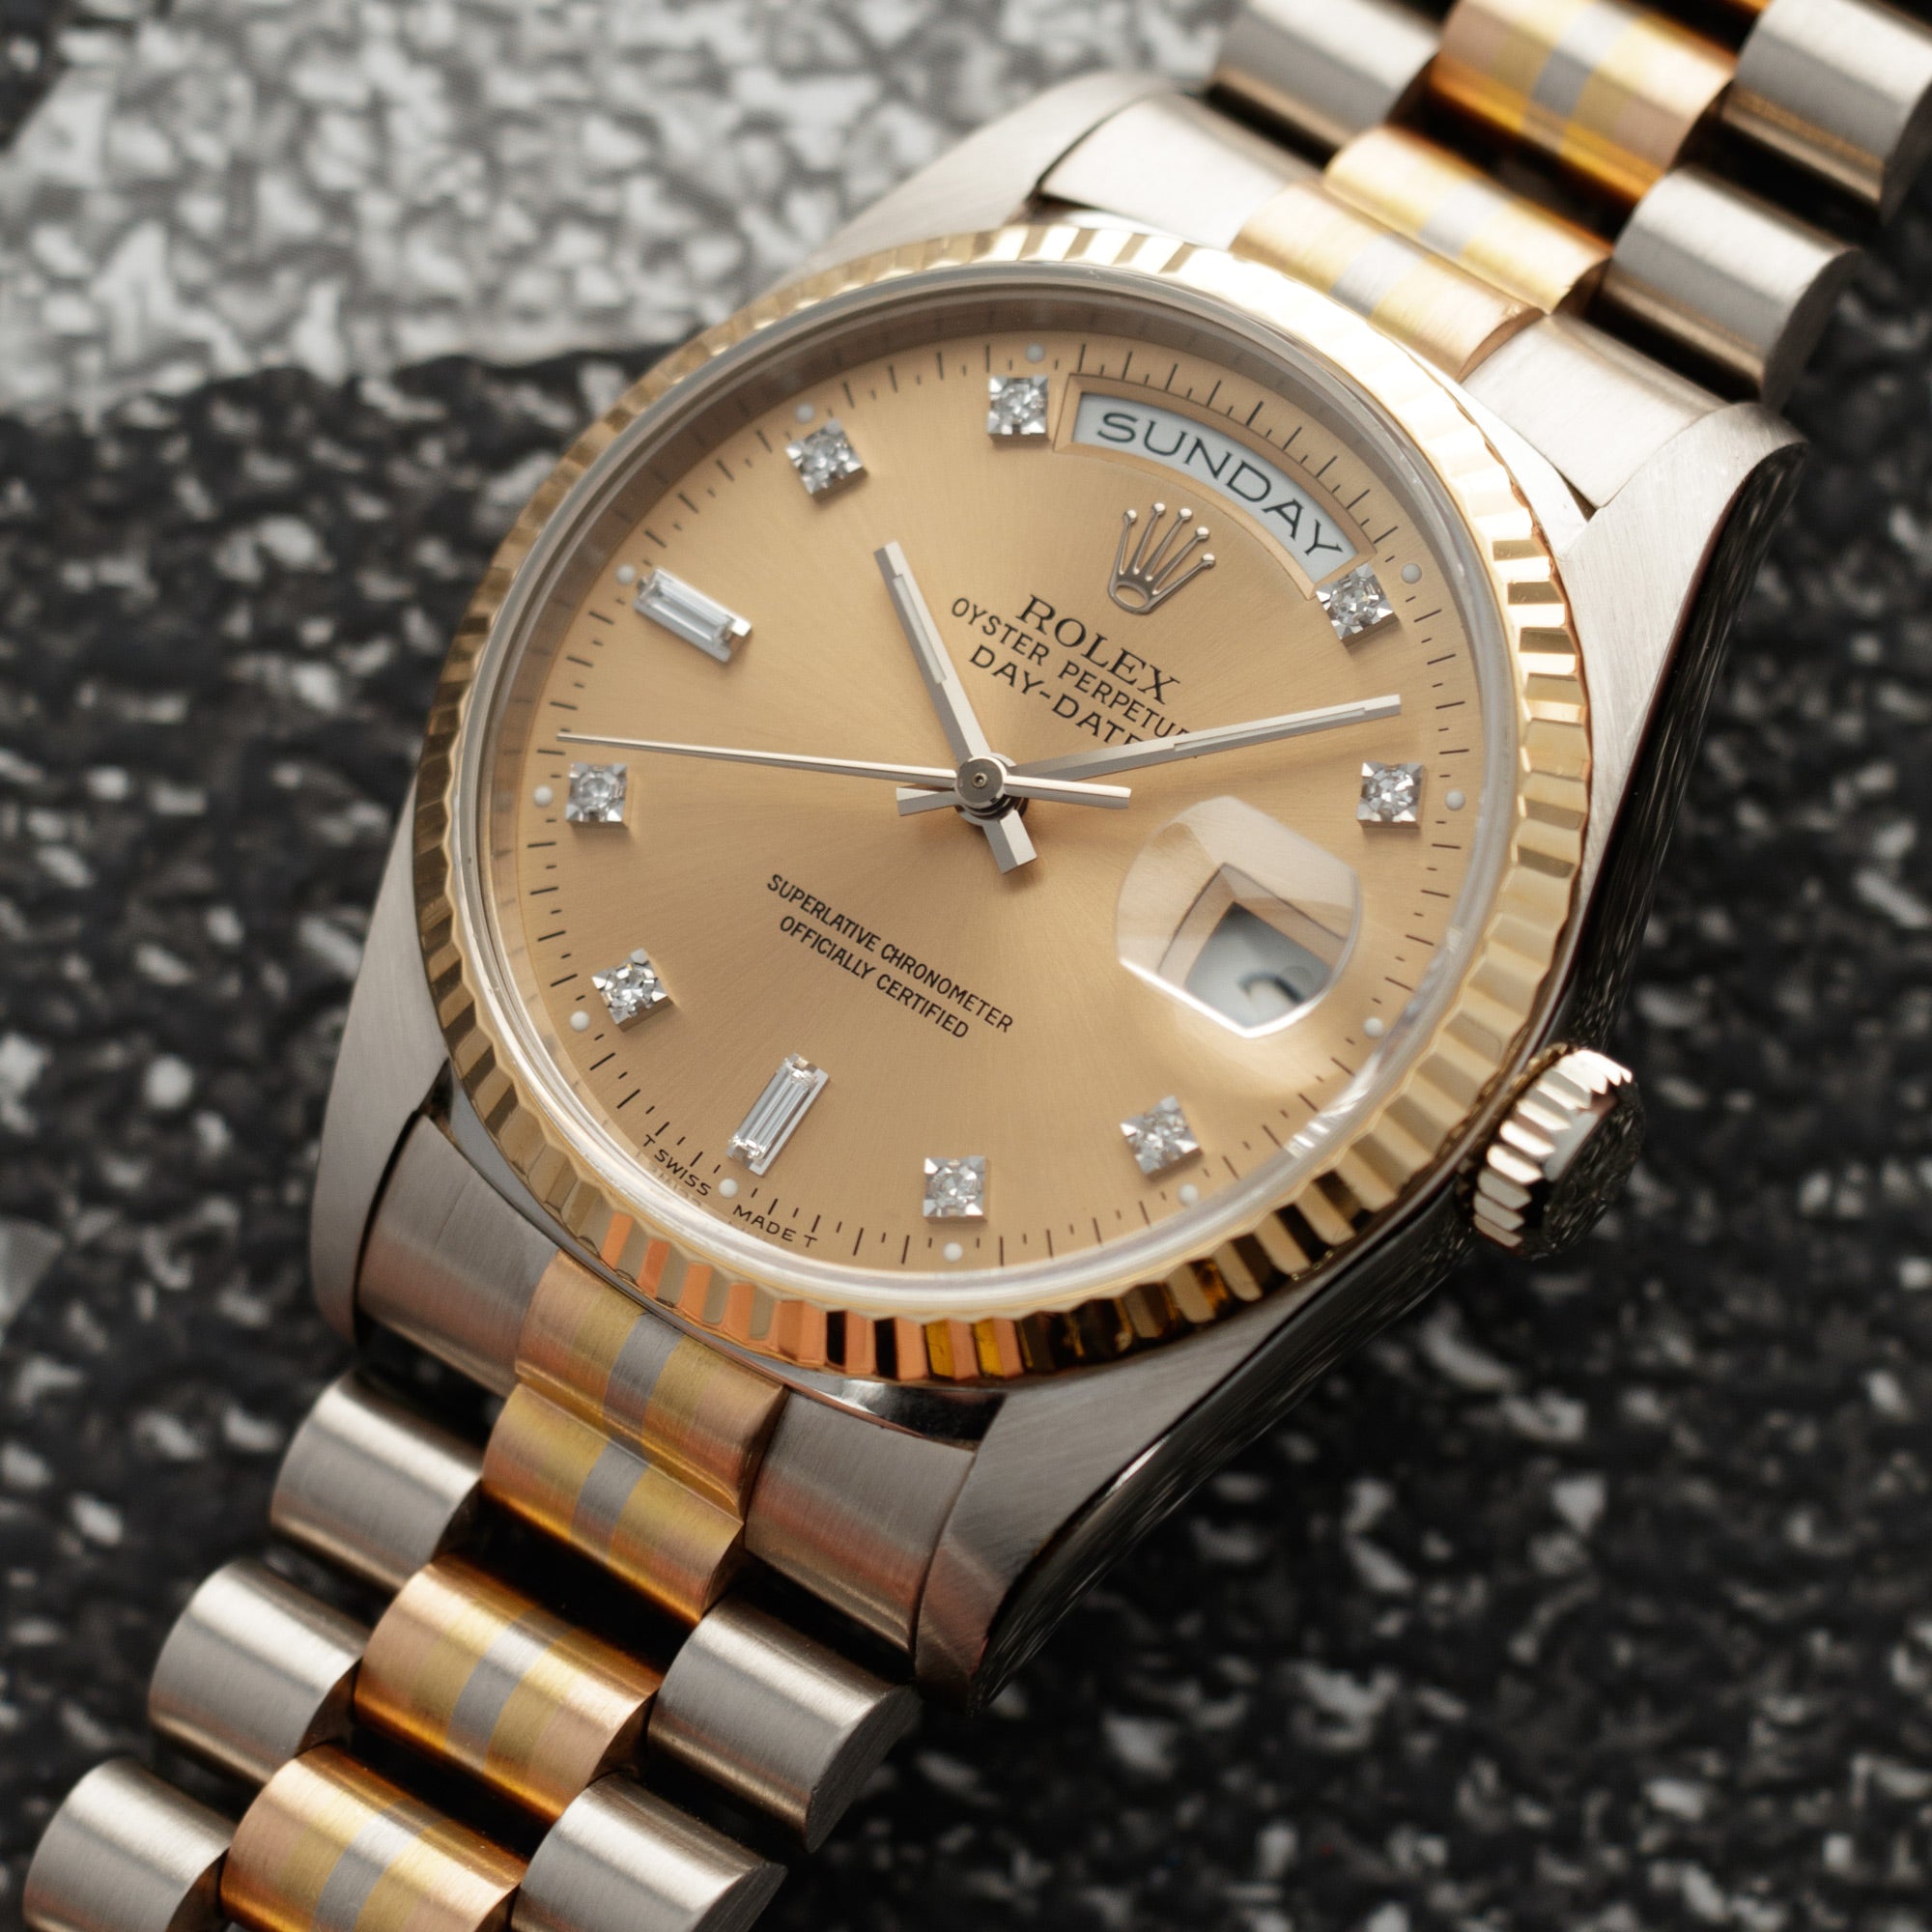 Rolex - Rolex Tridor Day-Date Ref. 18239 - The Keystone Watches